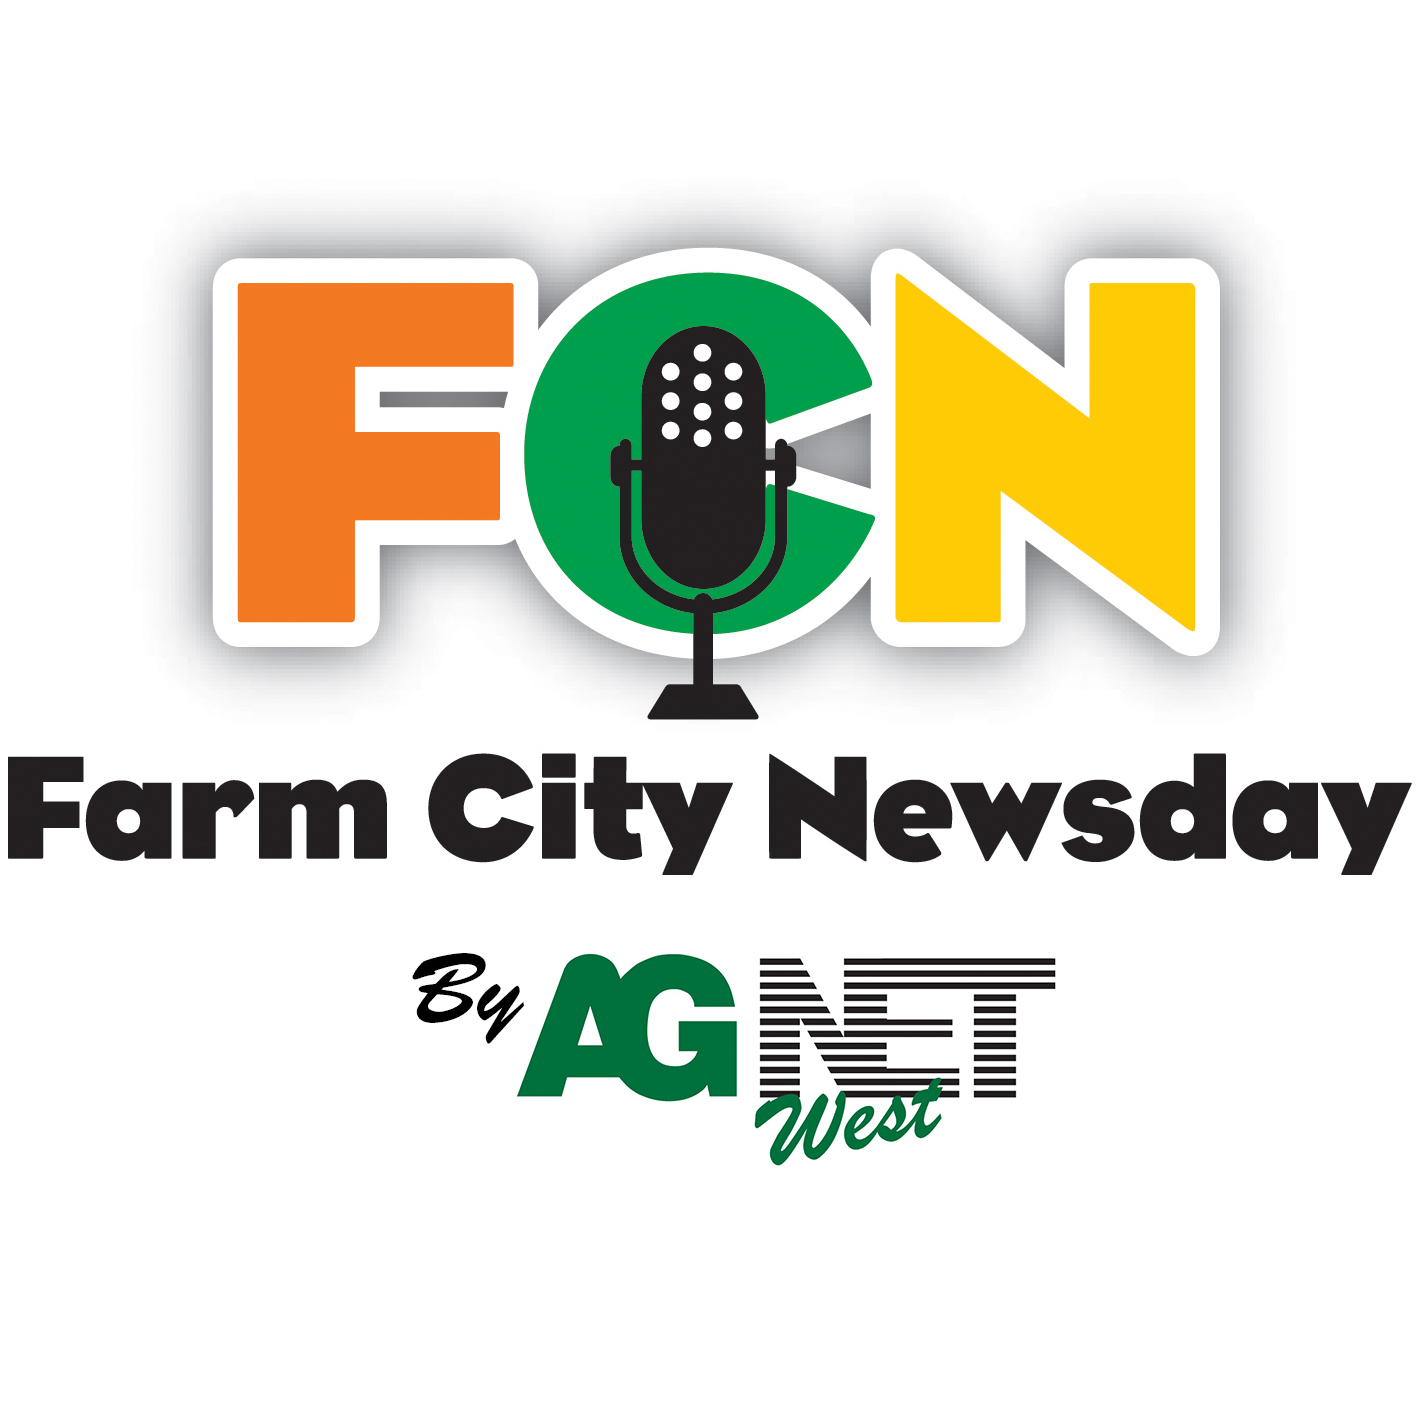 Farm City Newsday Wednesday 8-9-17